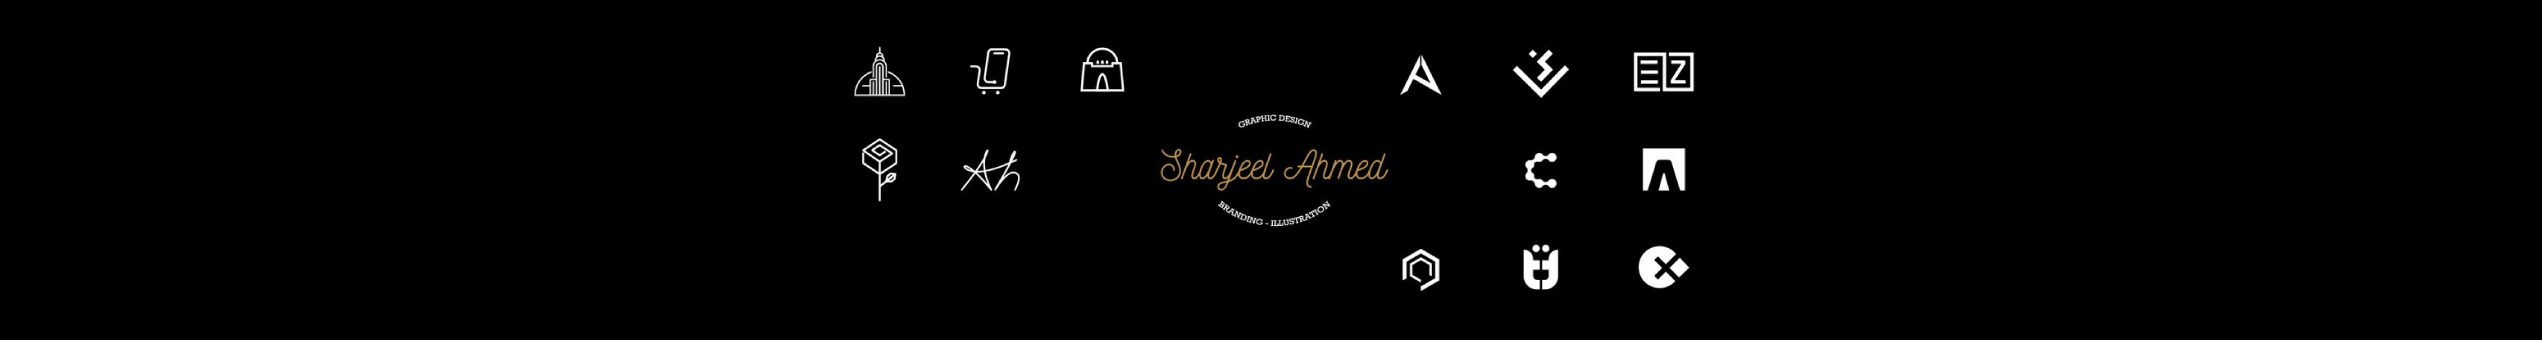 Baner profilu użytkownika Sharjeel Ahmed